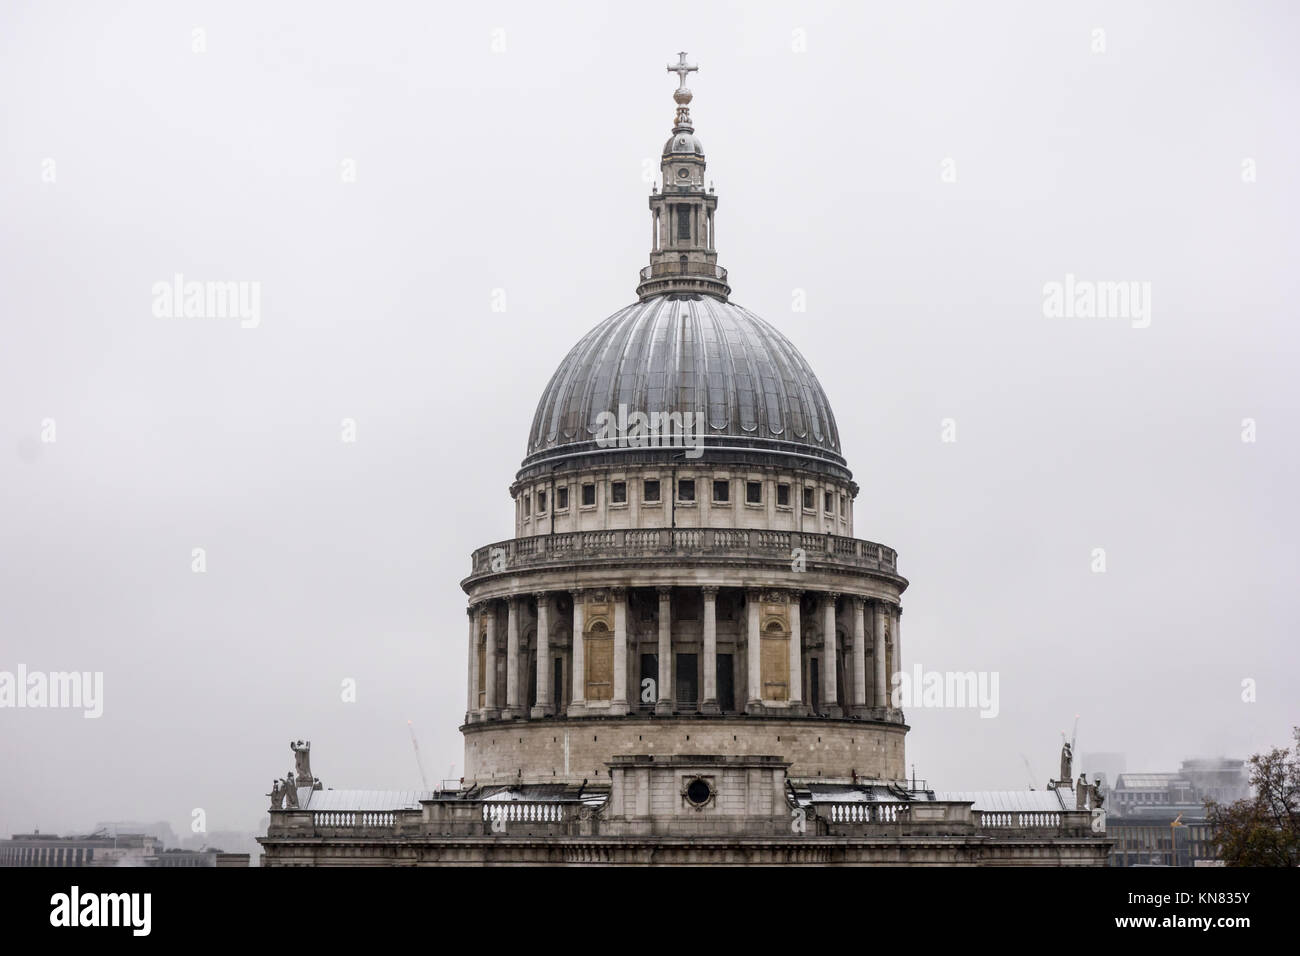 Londres, Royaume-Uni - 10 déc 2017 : une vue de la Cathédrale St Paul d'un nouveau changement après une grosse tempête de neige qui est tombée sur Londres. Credit : Fawcitt / Alamy Live News. Banque D'Images